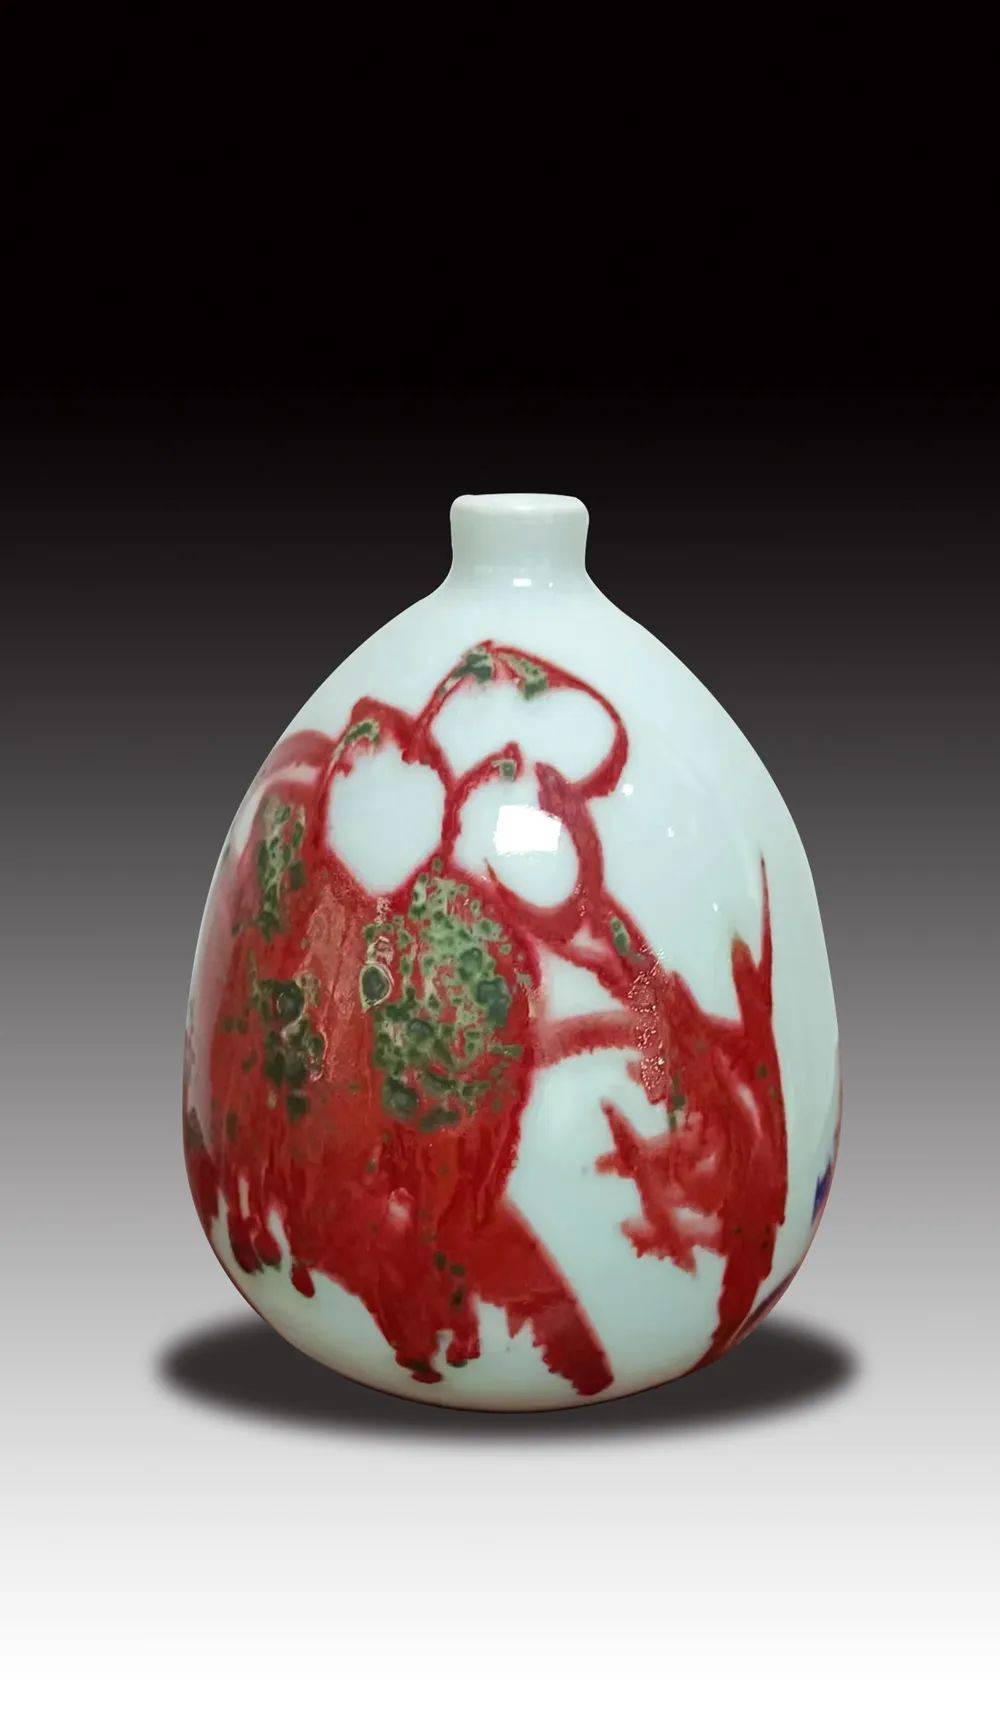 《瓷无止境》中国当代陶瓷艺术大展——蔡宝国